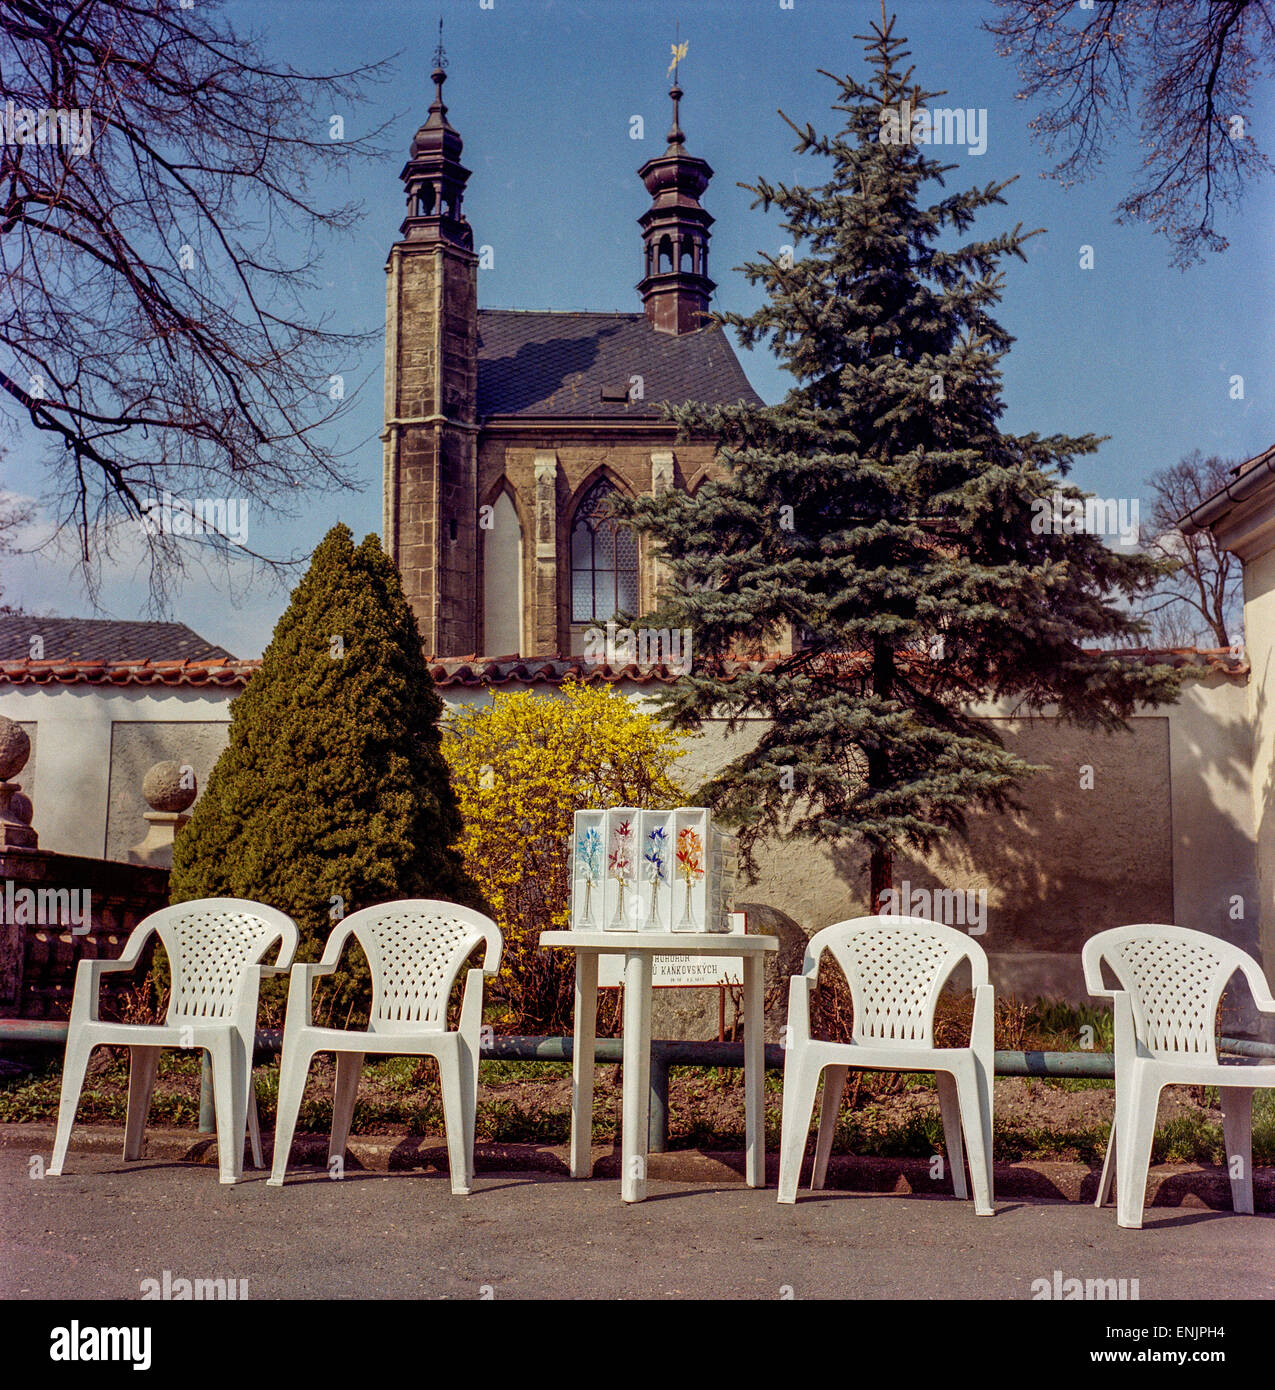 Sedlec Ossuary Außenkapelle Allerheiligen im Stadtteil Sedlec Kutna Hora, Plastikstühle für Touristen, Café-Shop in der Nähe Tschechien, Europa Stockfoto